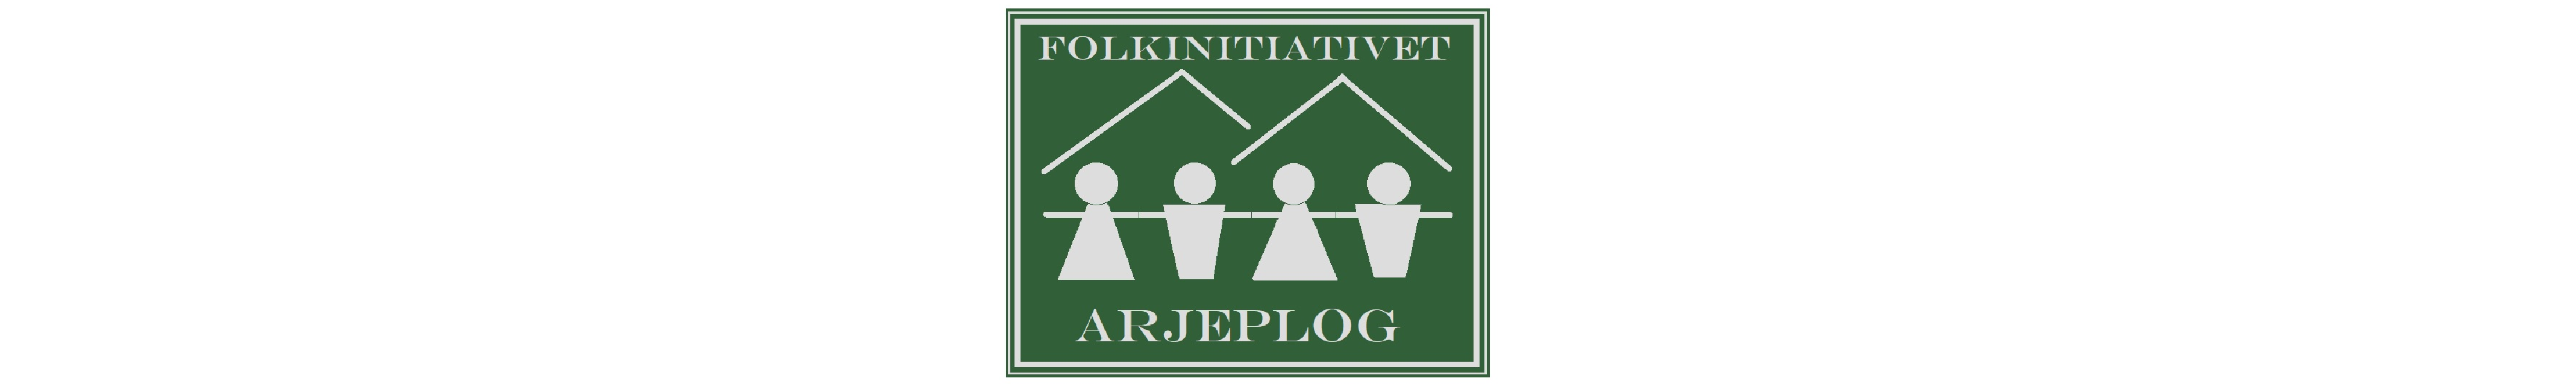 Symbol för partiet Folkinitiativ Arjeplog föreställande fyra personer som håller hand med fjälltoppar i bakgrunden, grön färg.